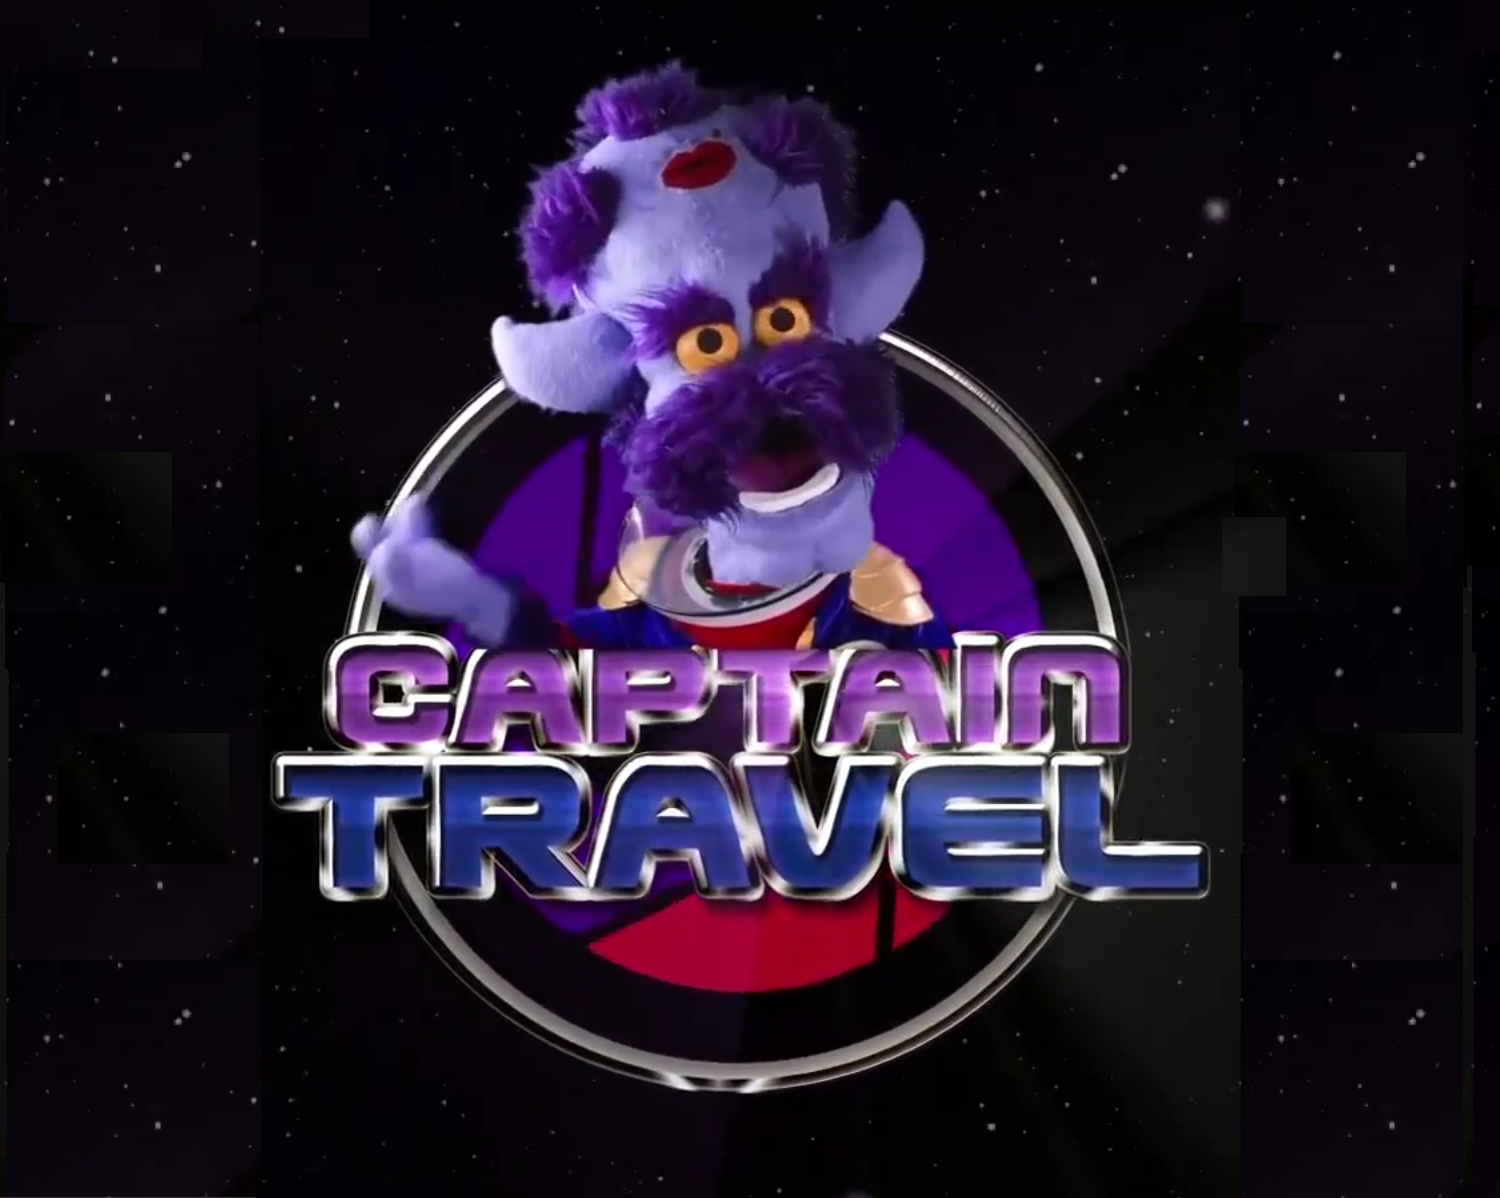 Captain Travel: TV Pilot